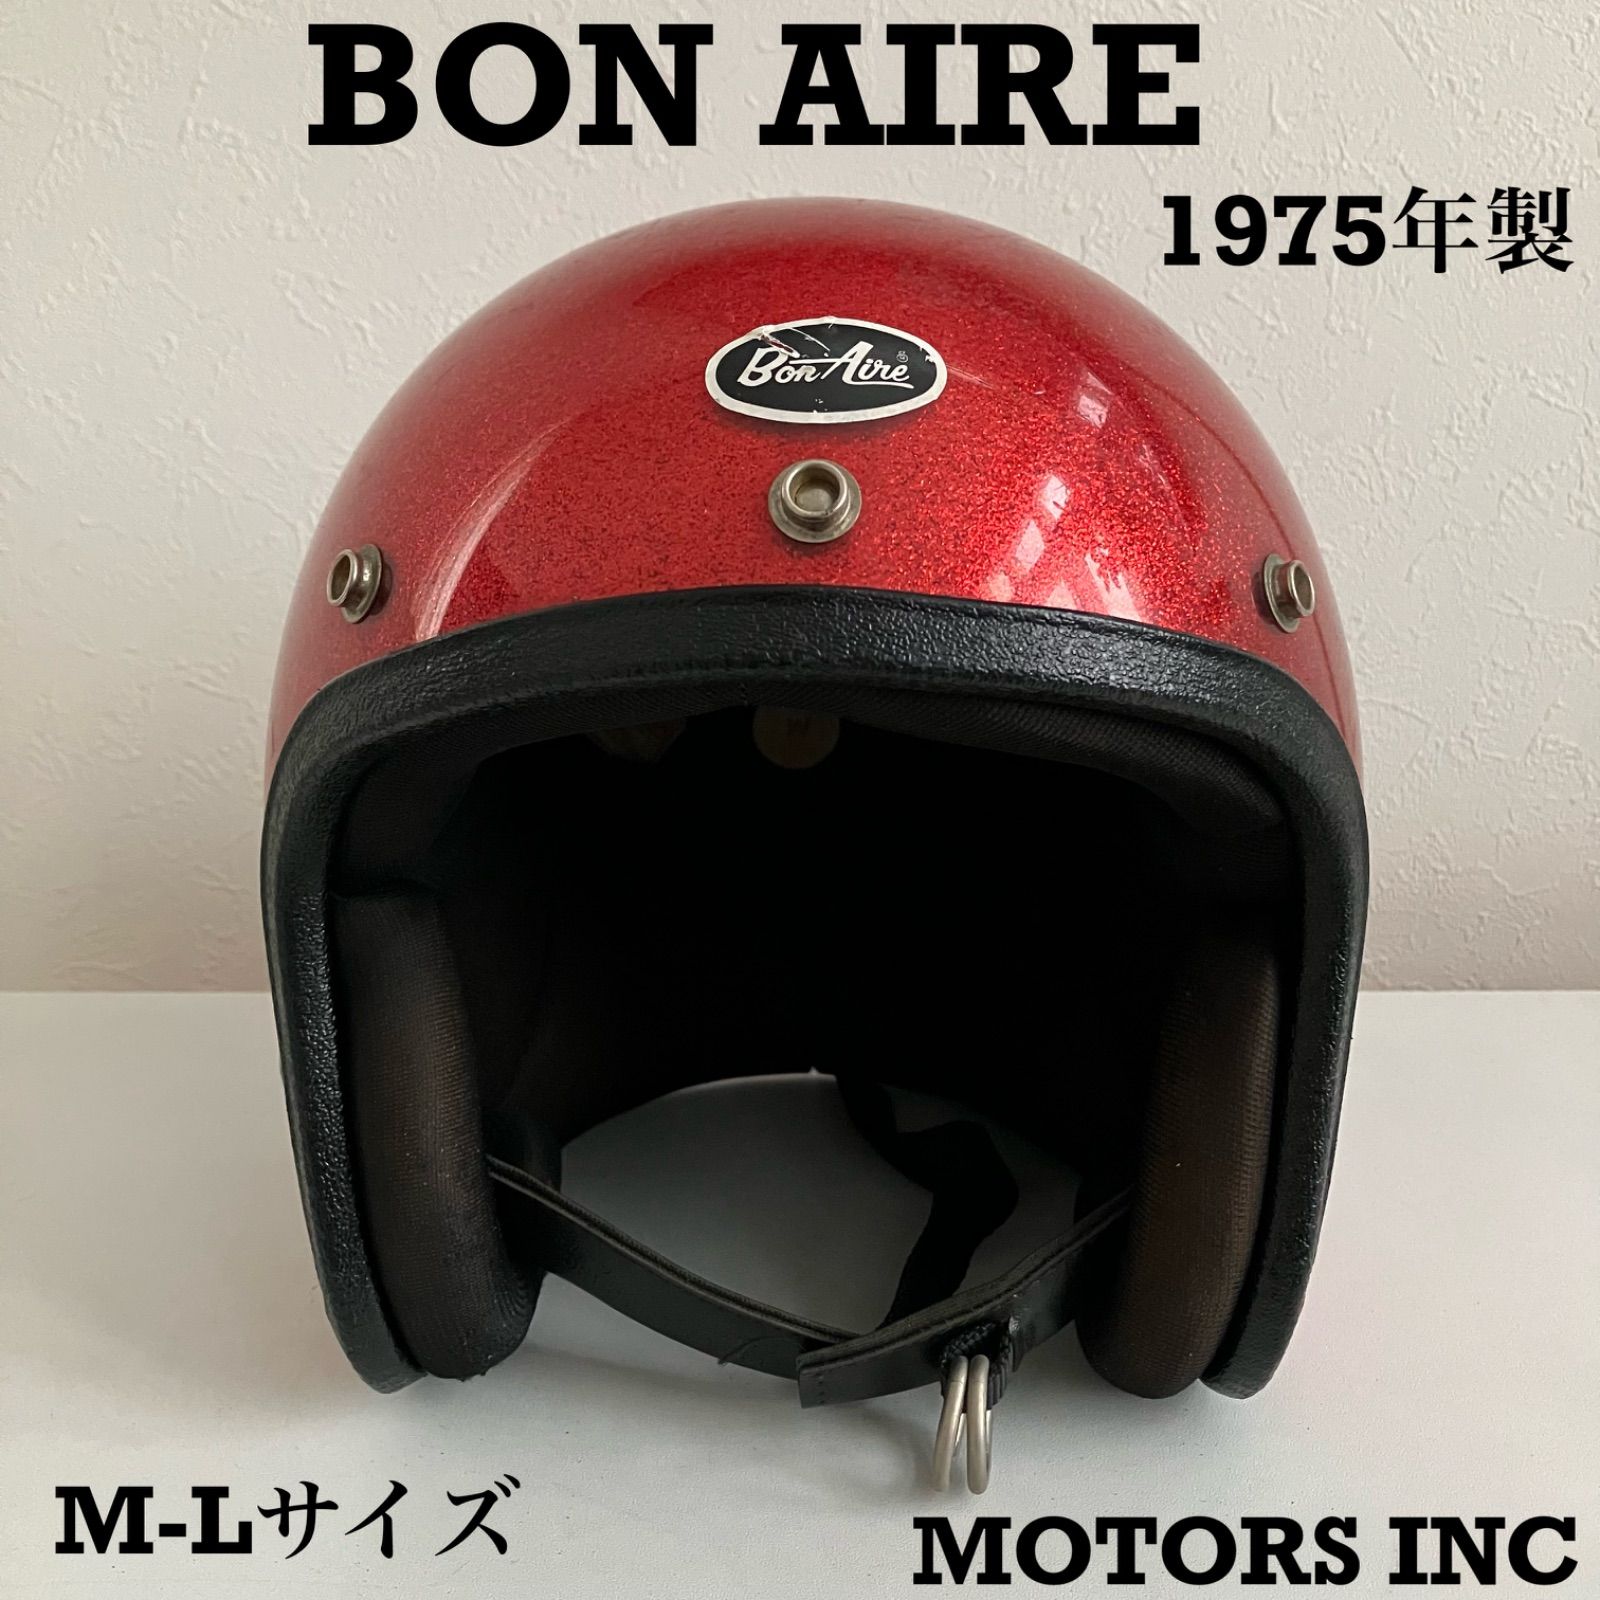 BON AIRE☆ビンテージヘルメット 1970年代 ヘルメット 赤 フレーク